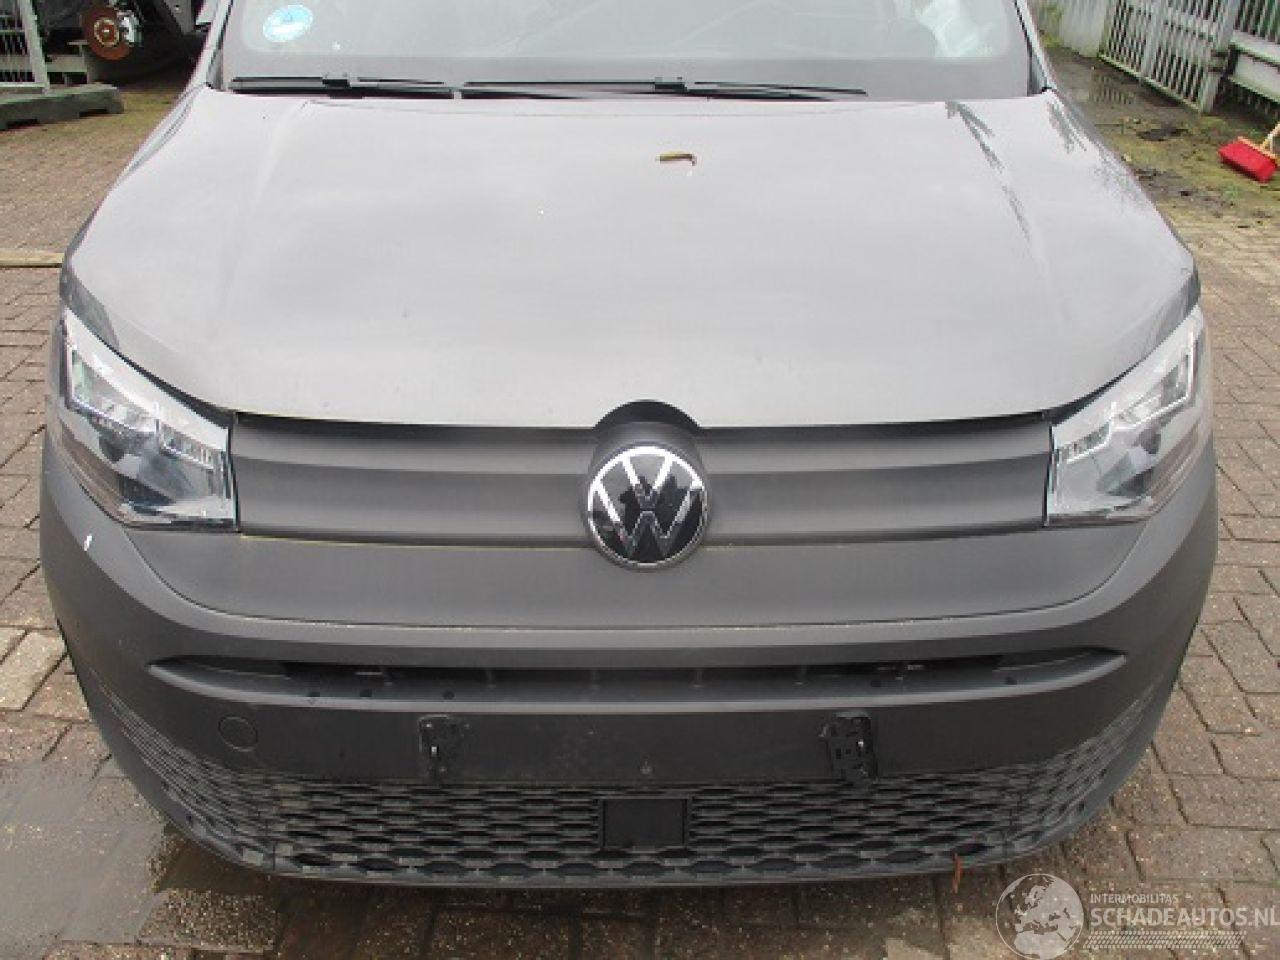 Volkswagen Caddy 